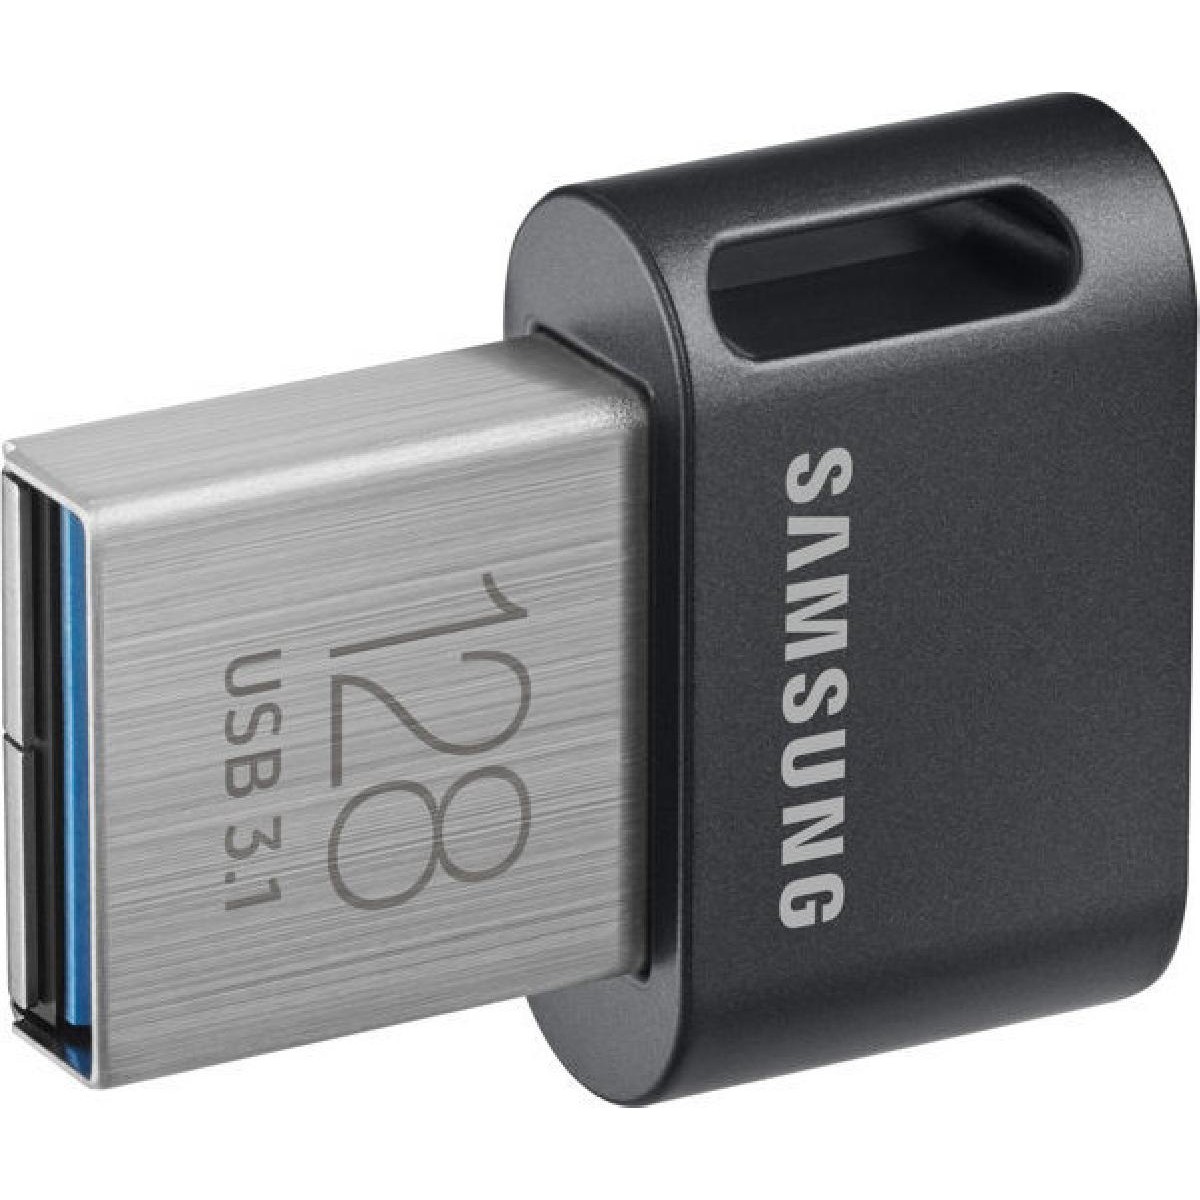 Samsung Flash Drive FIT Plus USB stick 128GB USB 3.1 (MUF-128AB/APC)